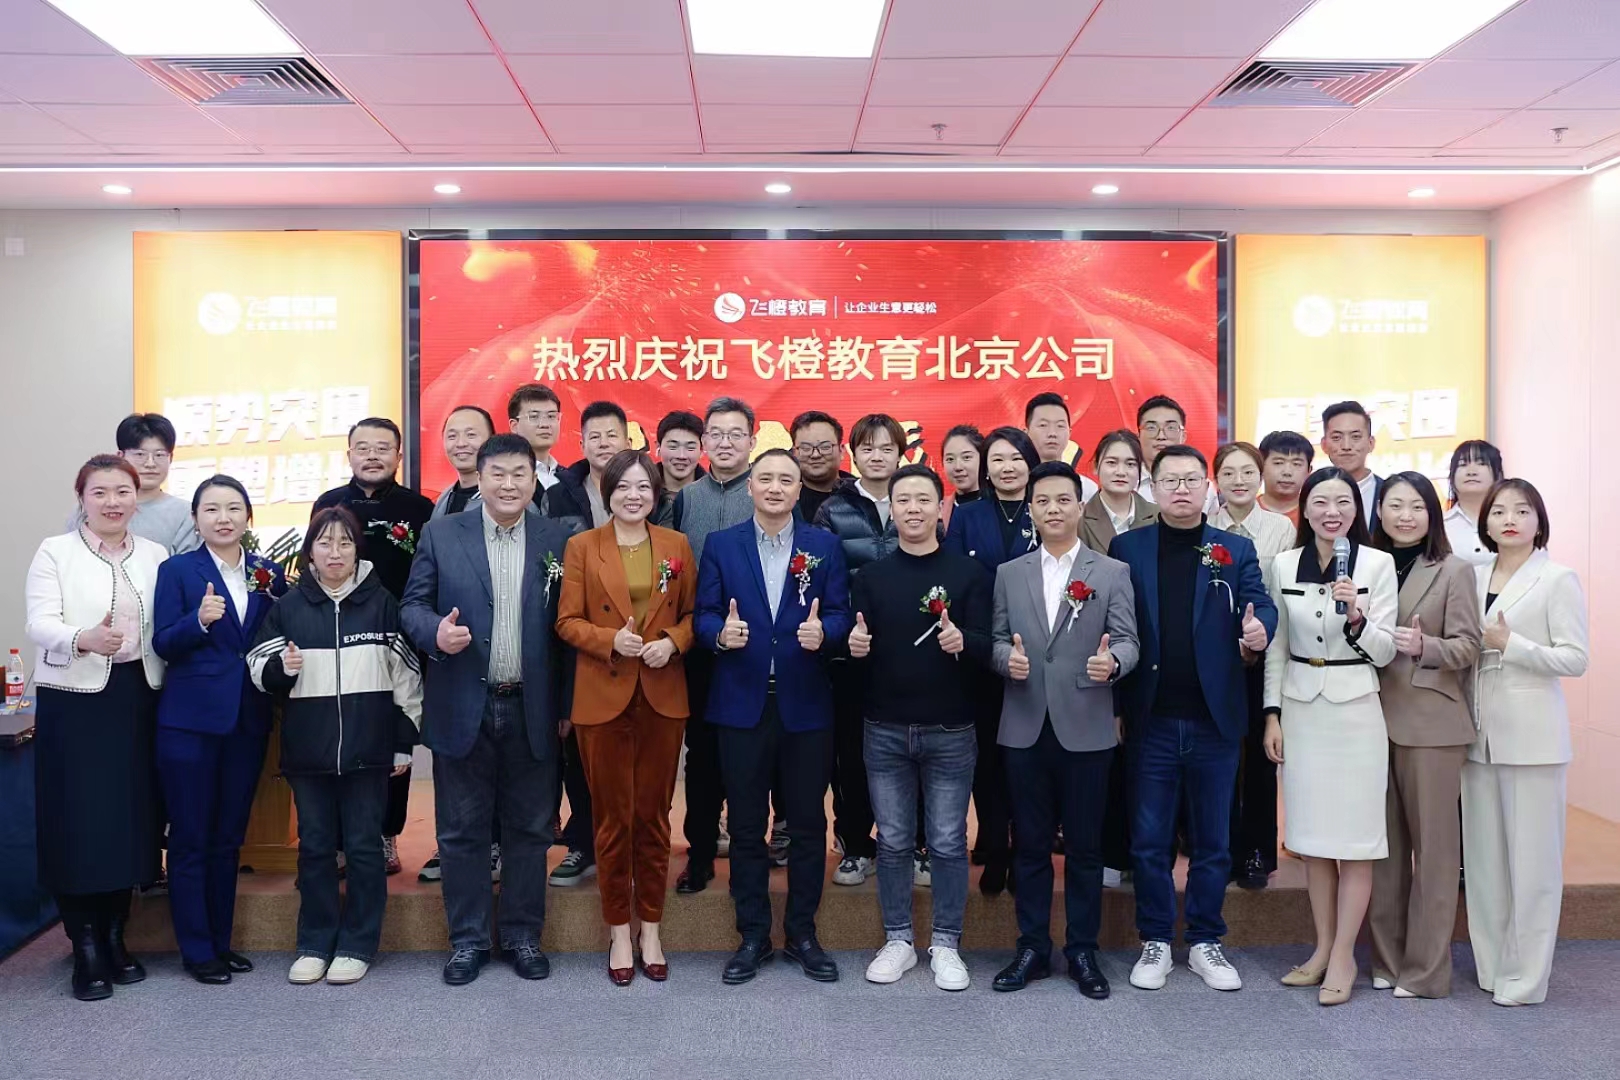  生态美家为飞橙教育北京公司新办公职场做甲醛治理，打造健康室内空气环境